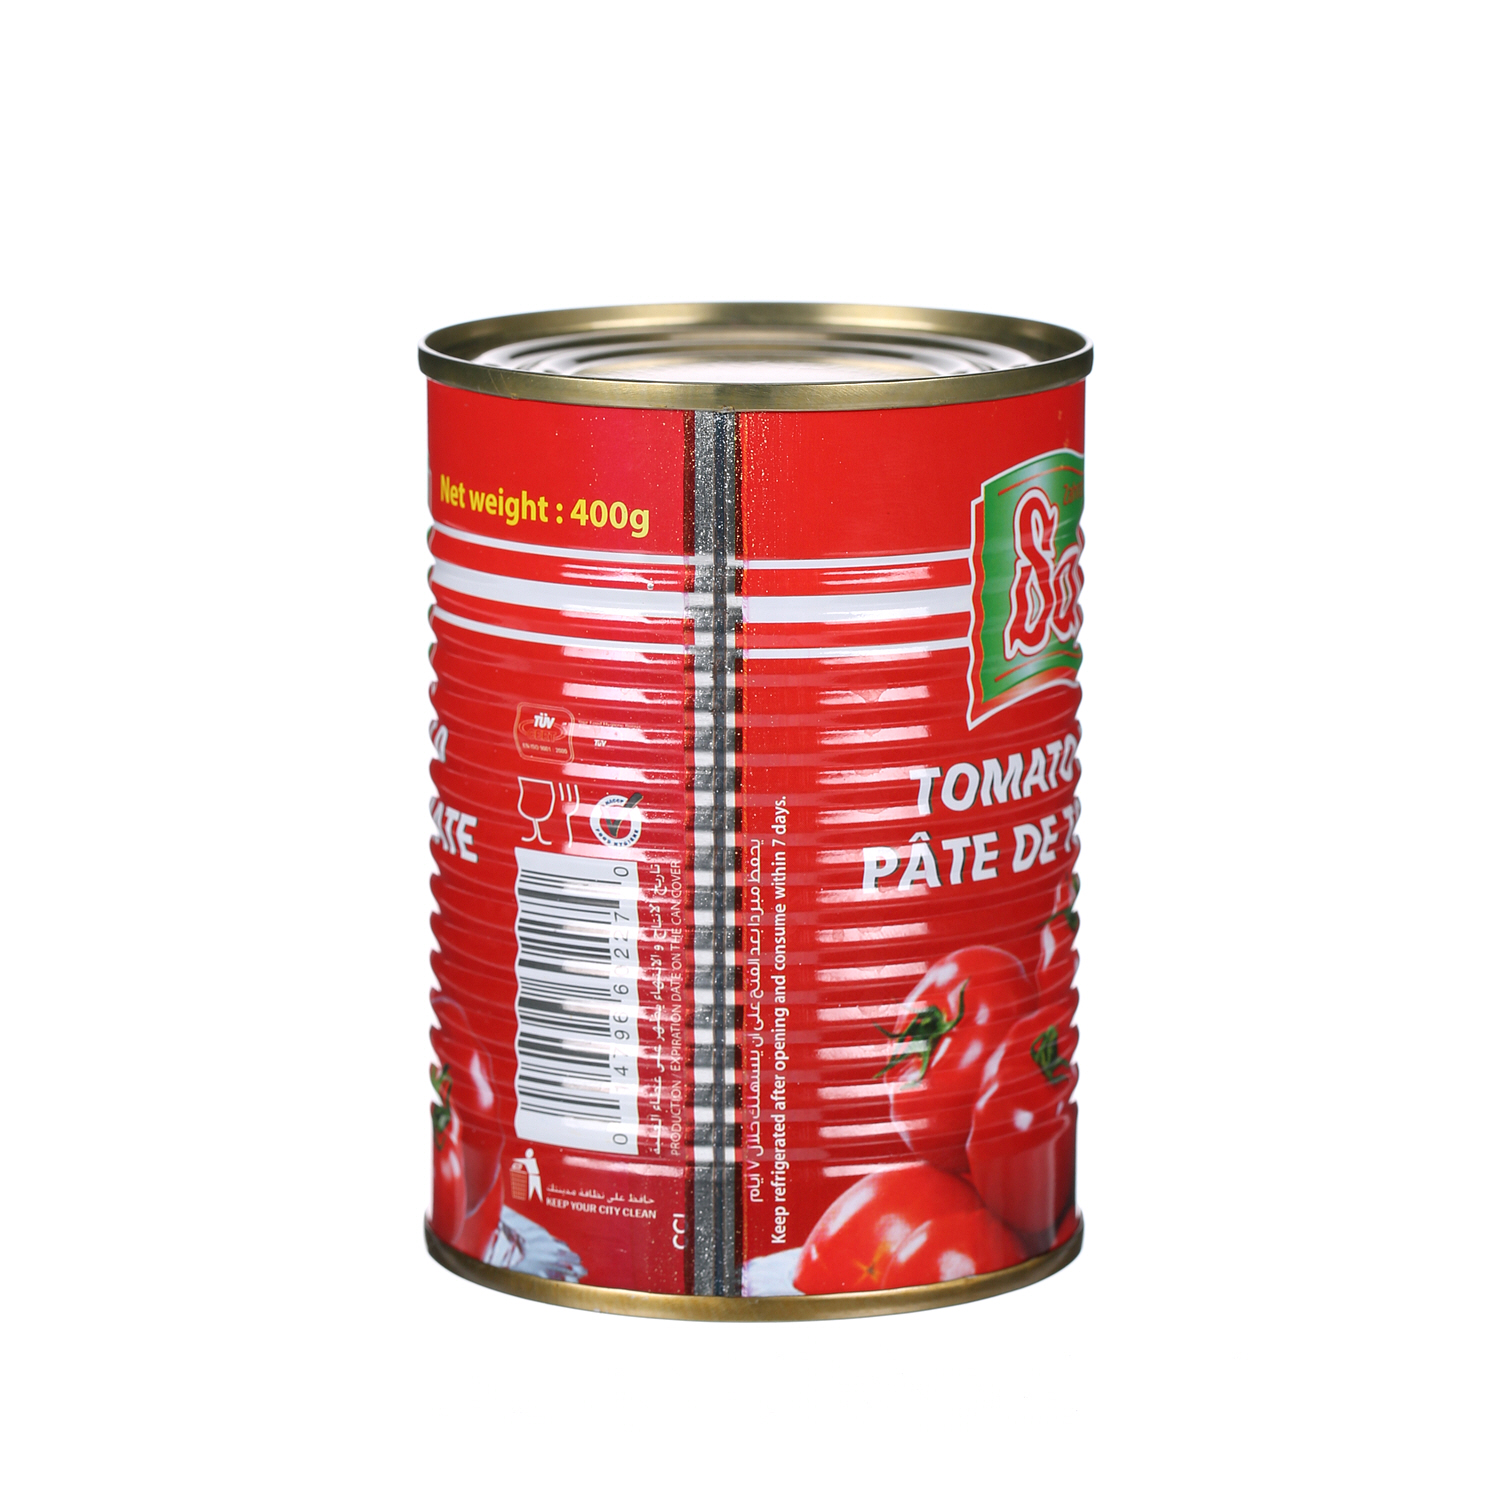 Safa Tomato Paste 400 g